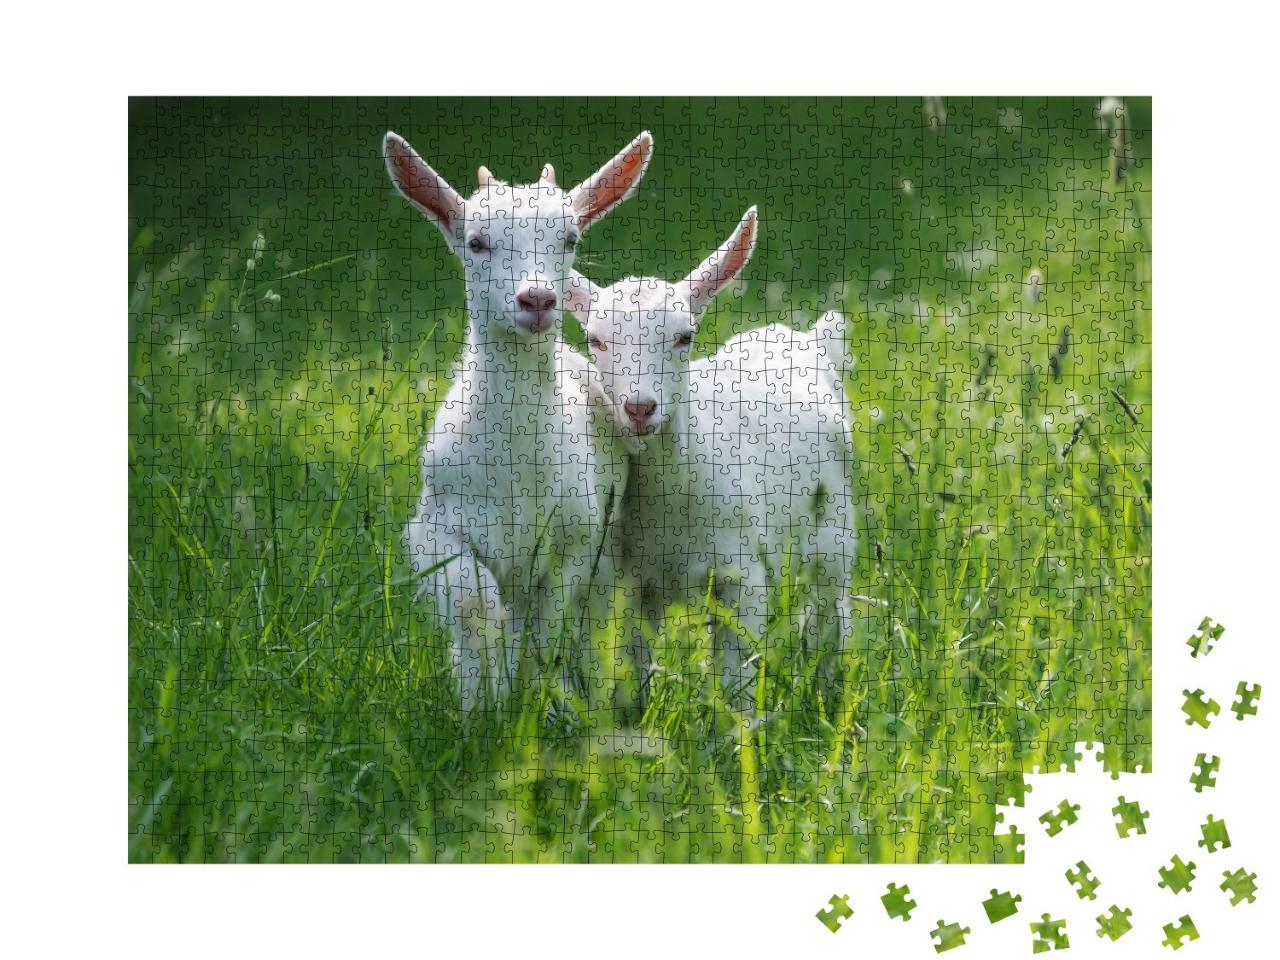 Puzzle de 1000 pièces « Deux bébés chèvres dans l'herbe haute de l'été »